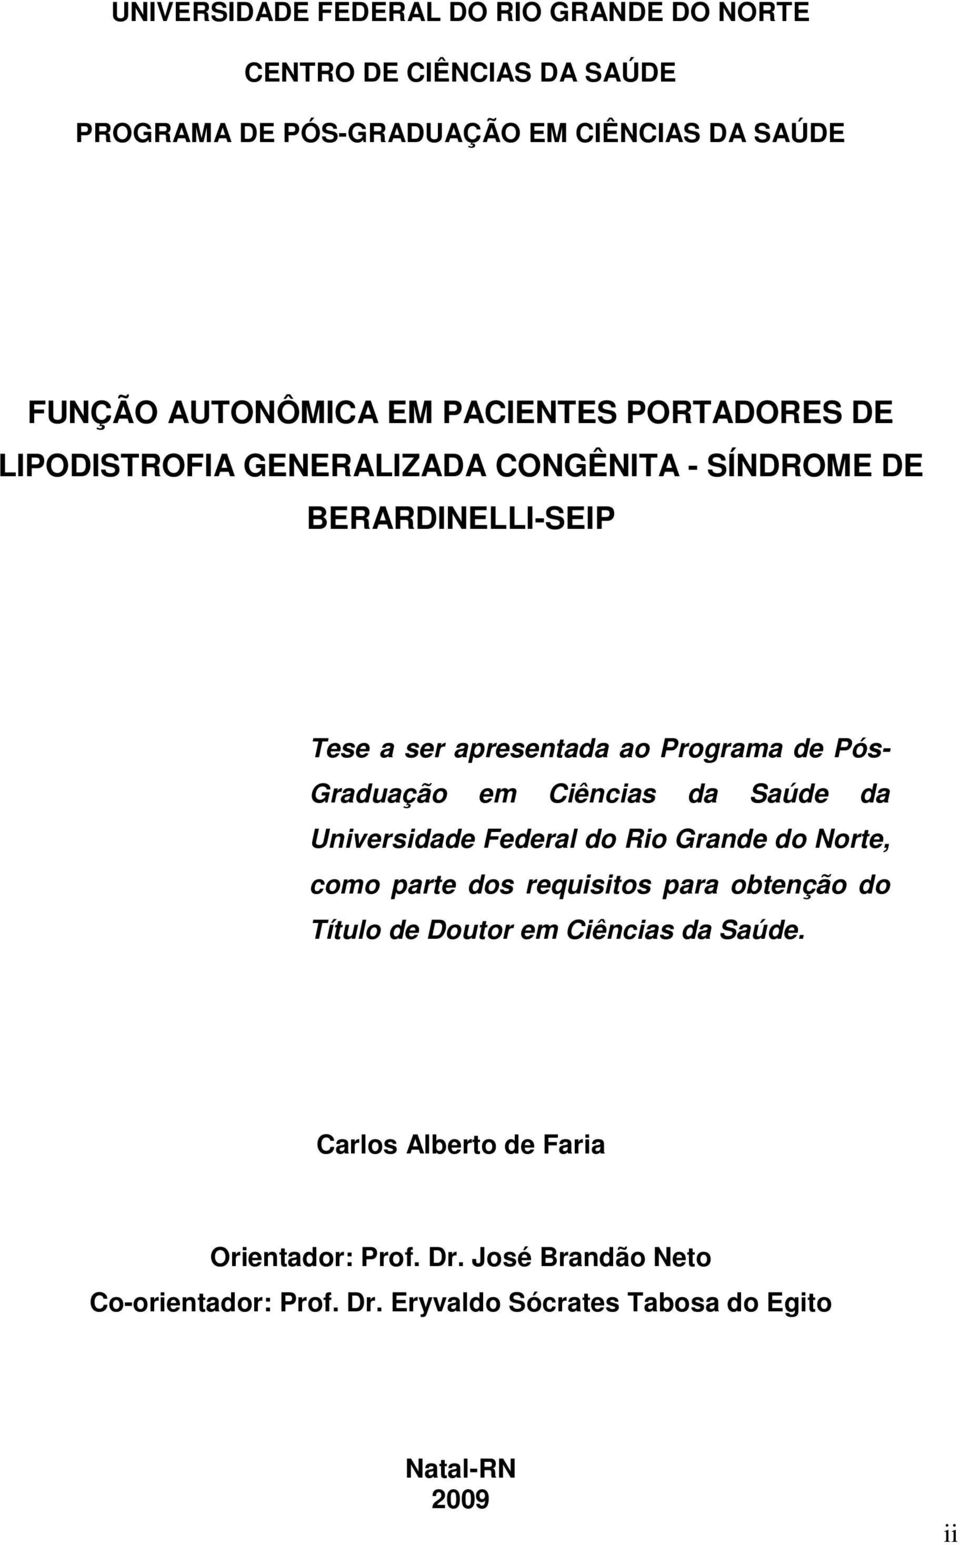 Graduação em Ciências da Saúde da Universidade Federal do Rio Grande do Norte, como parte dos requisitos para obtenção do Título de Doutor em